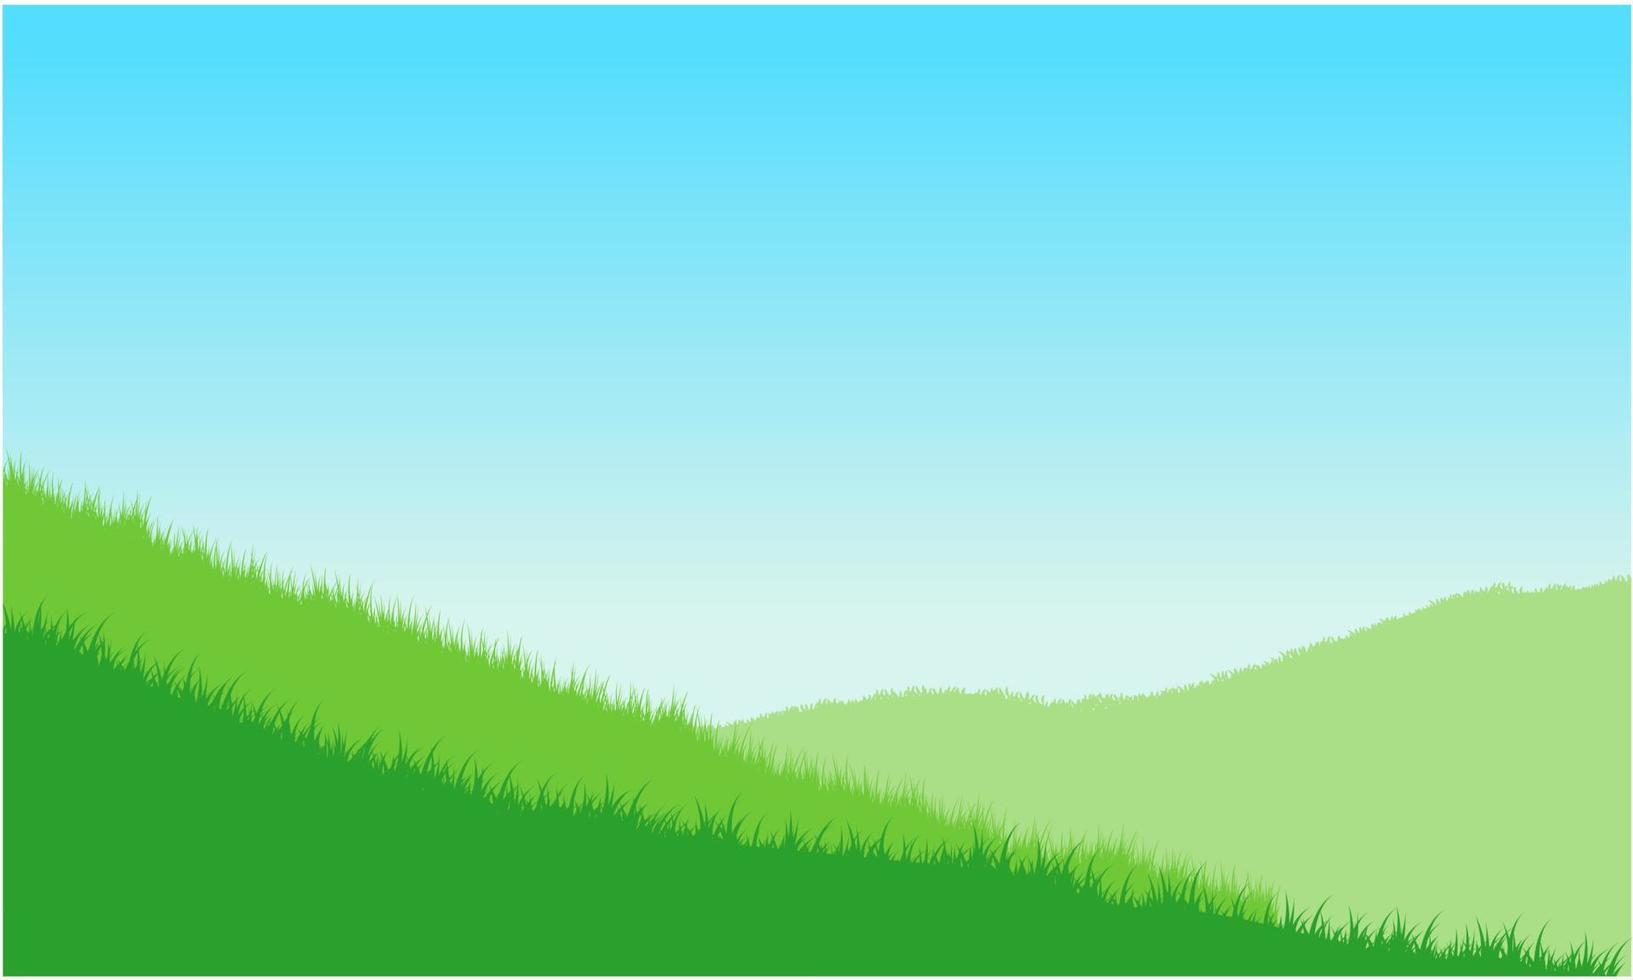 gräsfält, gräsmark, gräskullar och himmelbakgrund vektor